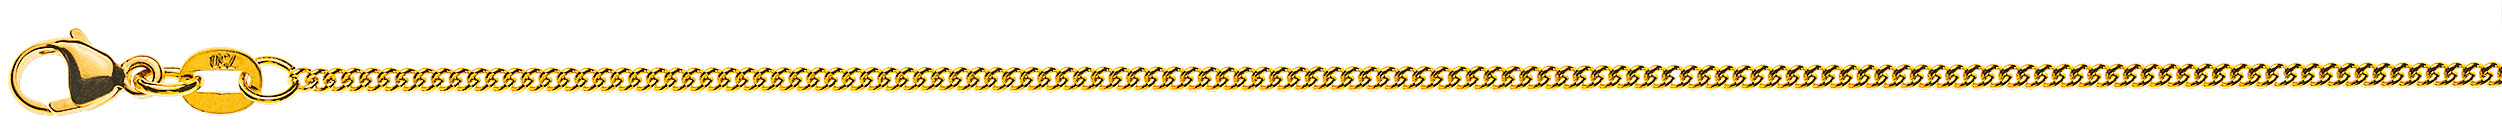 AURONOS Prestige Halskette Gelbgold 18K Rundpanzerkette 42cm 1.6mm